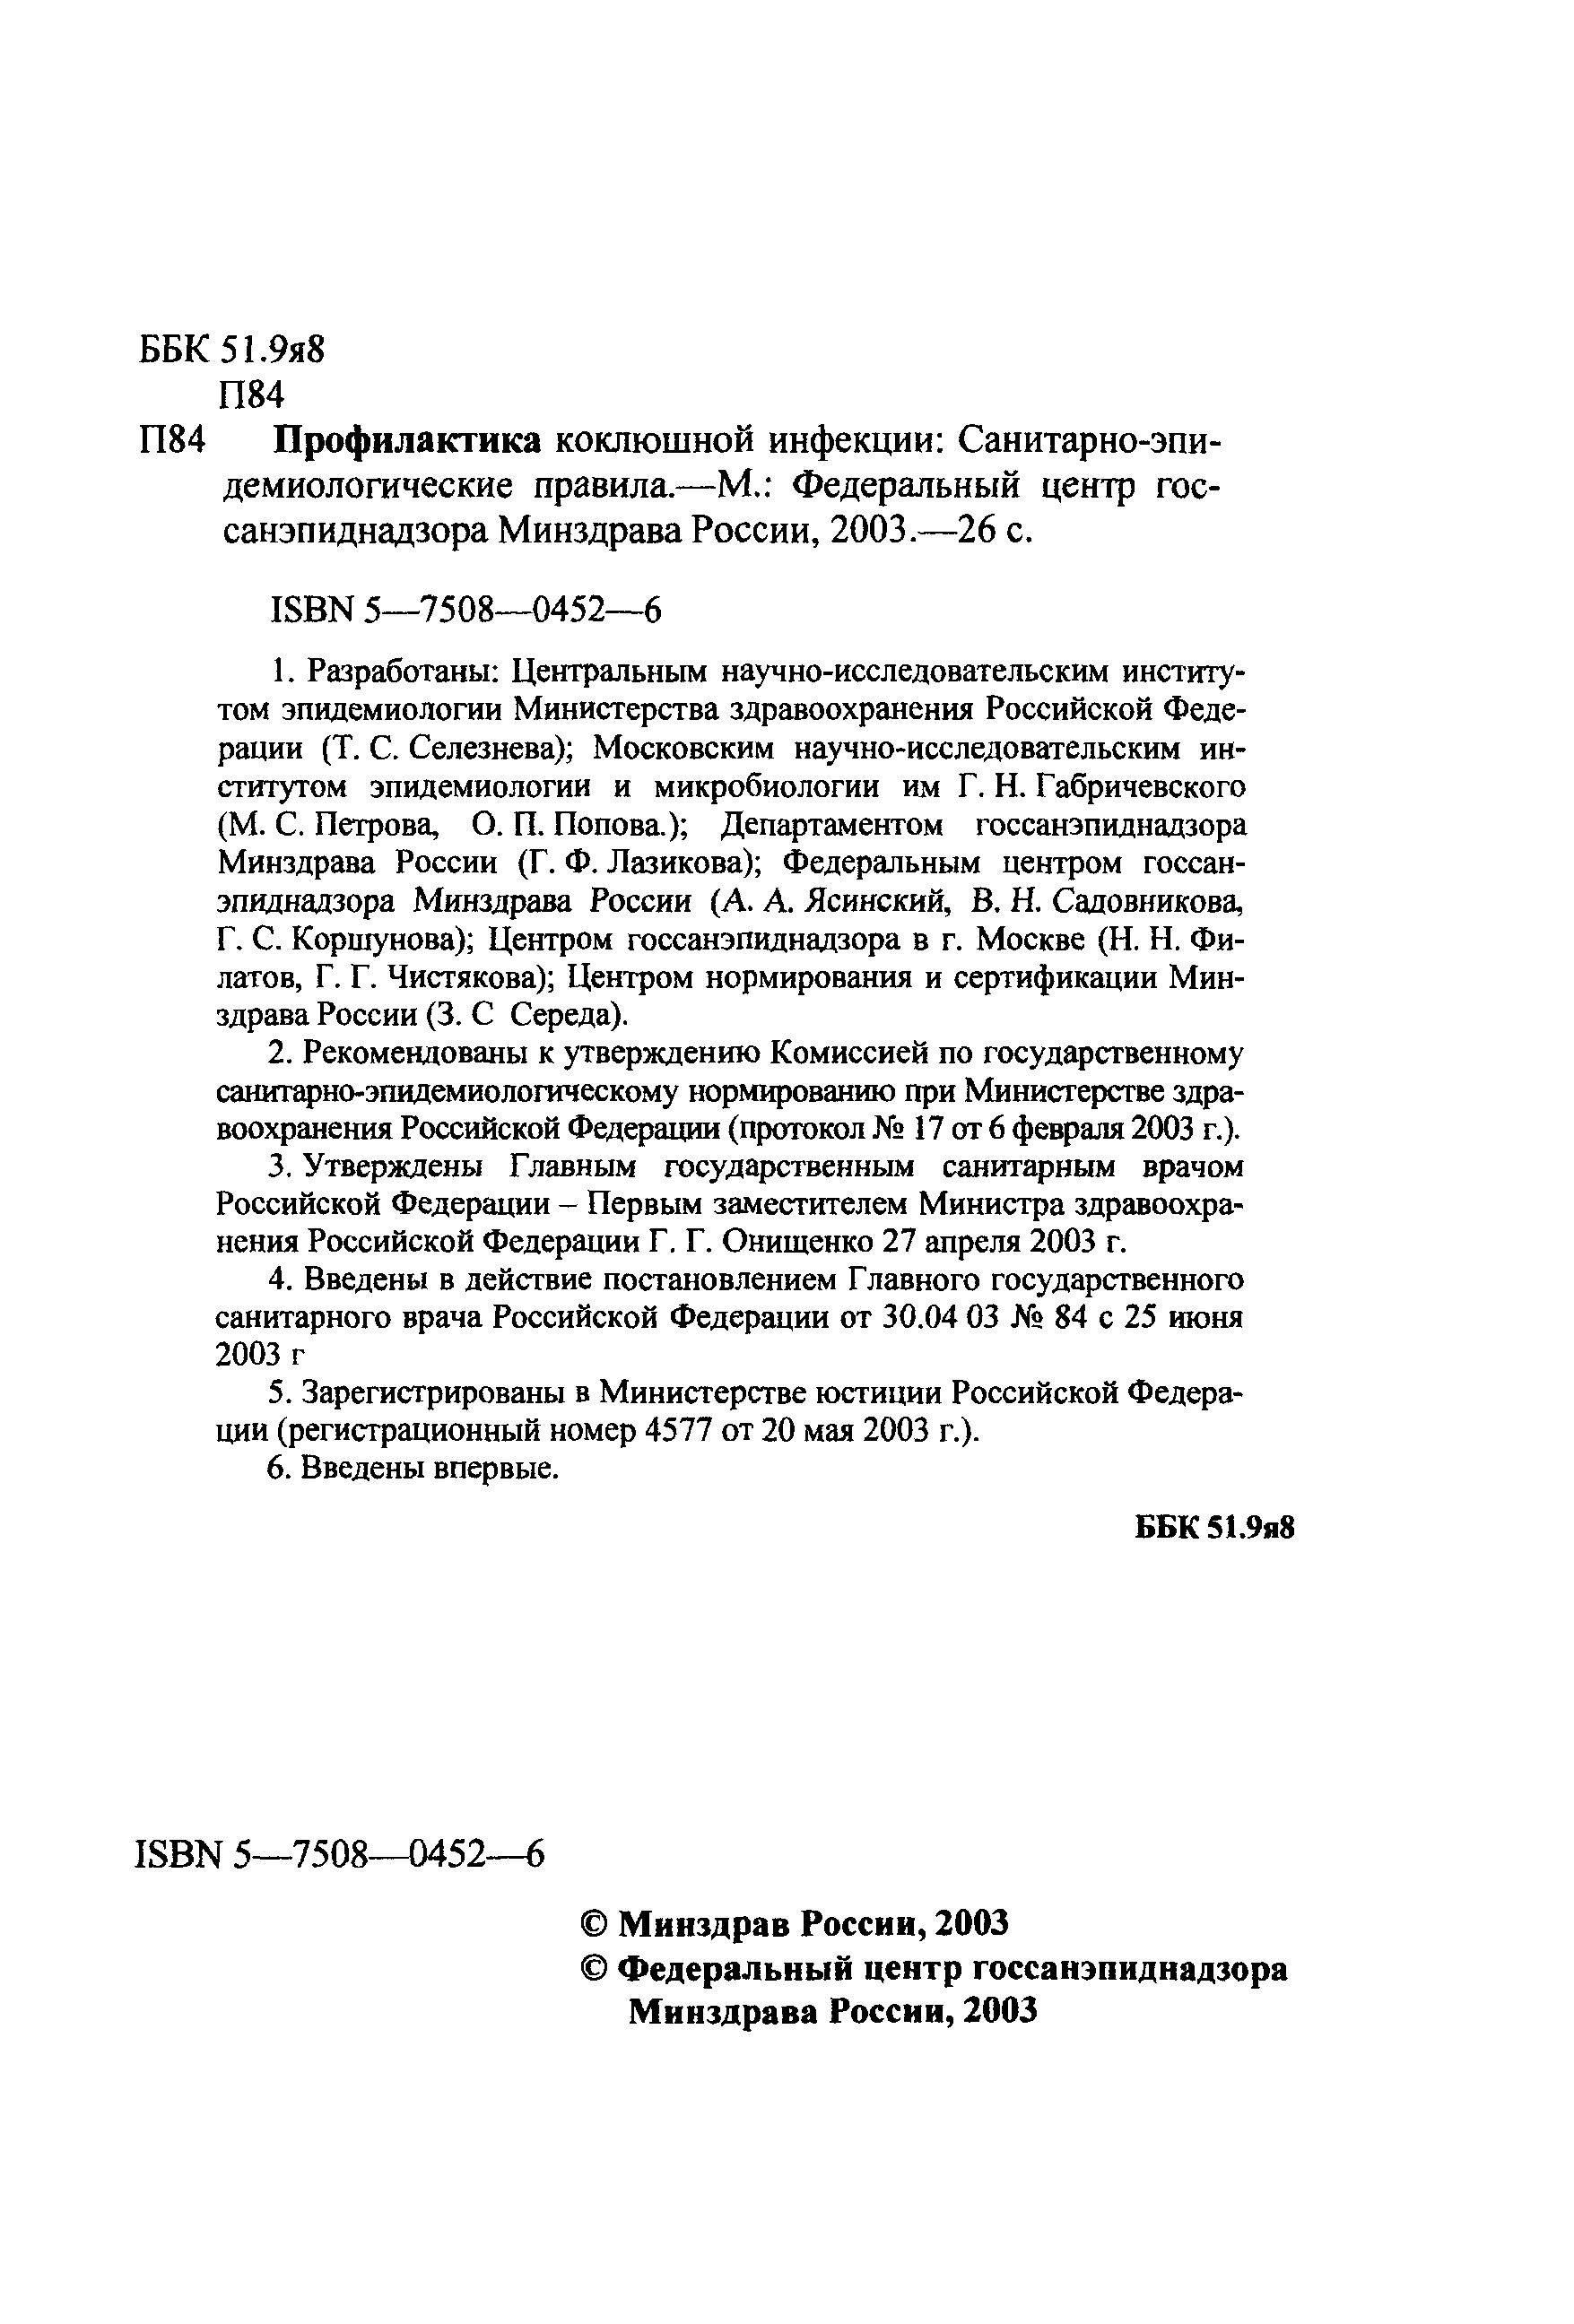 СП 3.1.2.1320-03